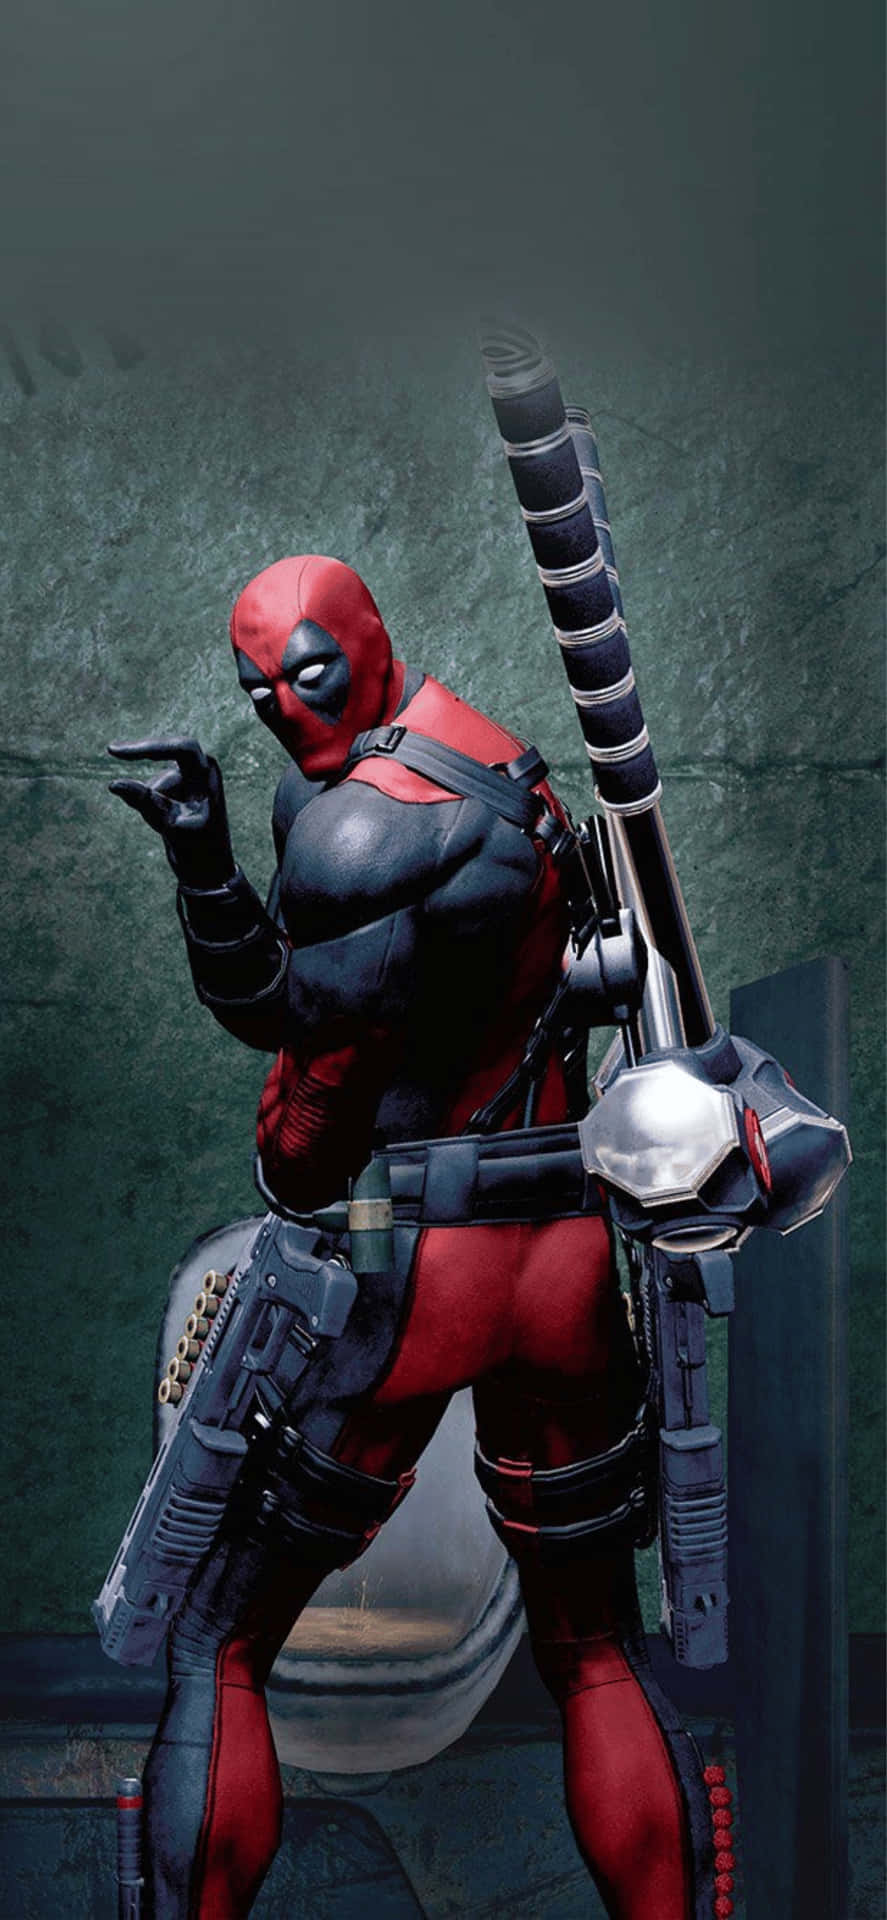 Iphonexs Max Bakgrund Med Marvel Superhjälten Deadpool.